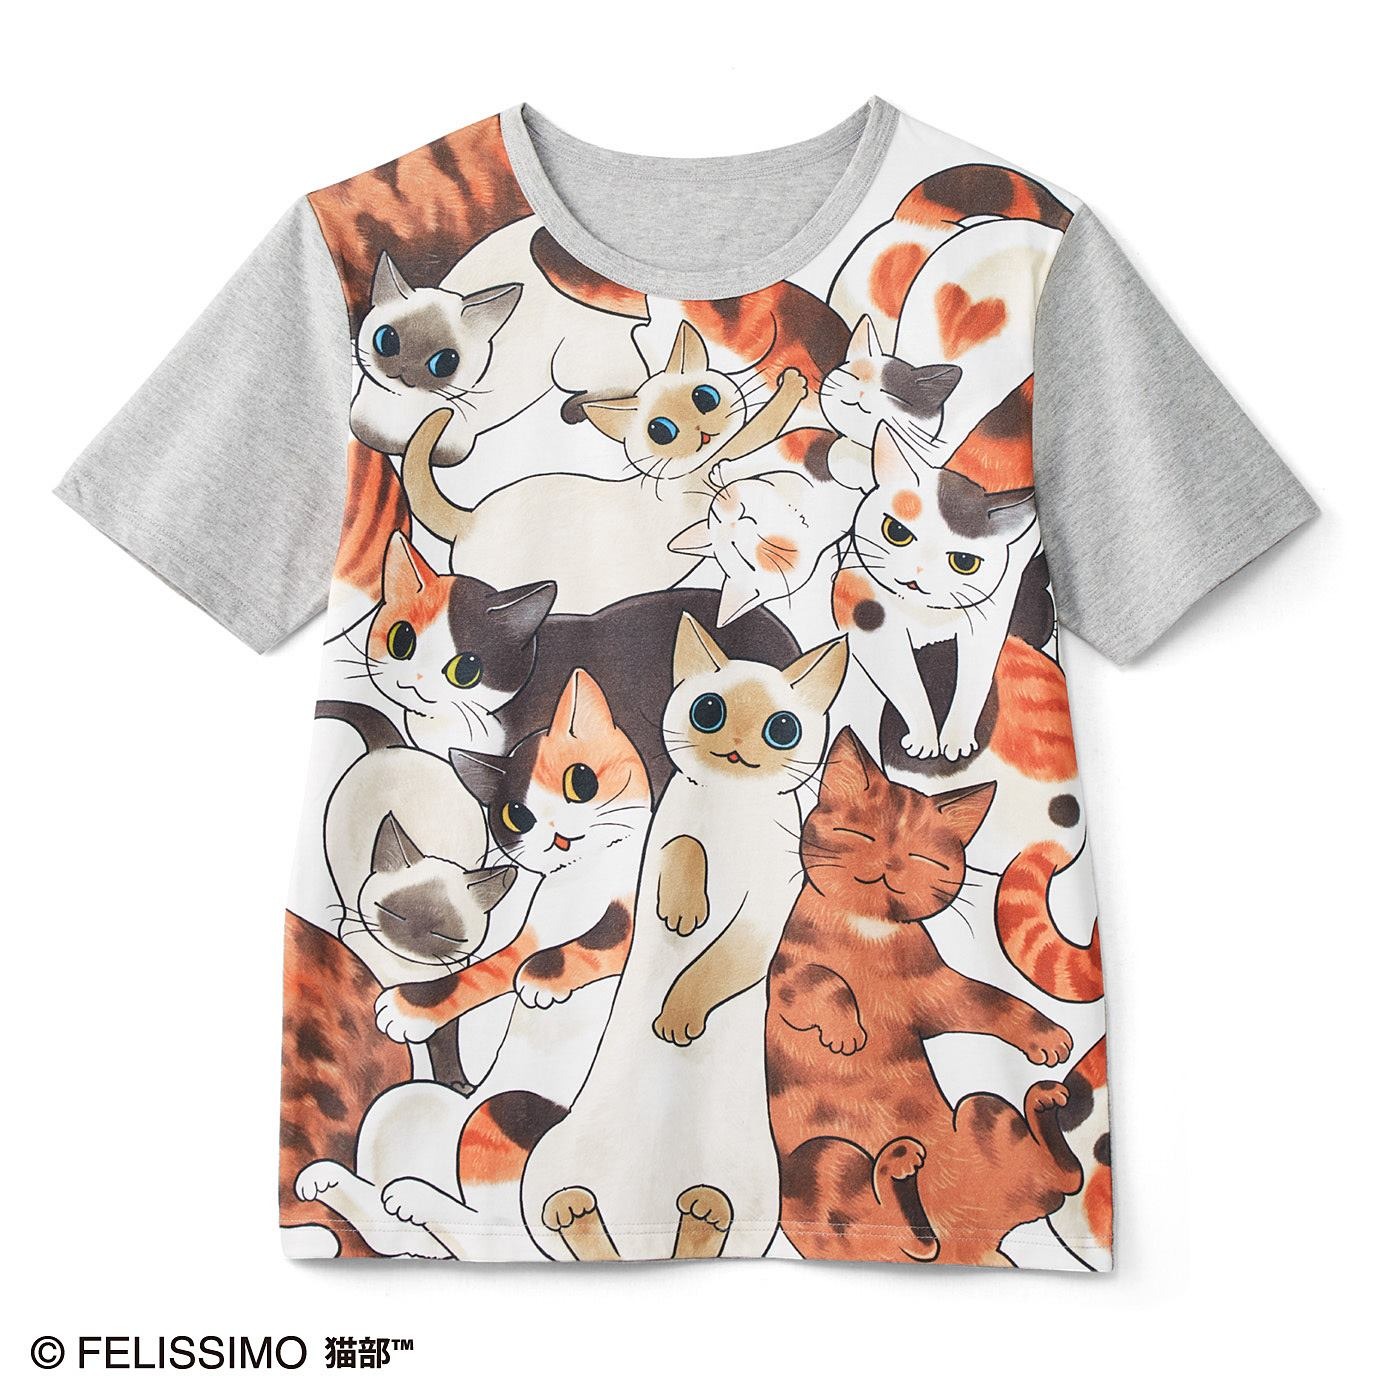 フェリシモ 猫好き猛アピールtシャツフルカラー を発売 動物のリアルを伝えるwebメディア Reanimal